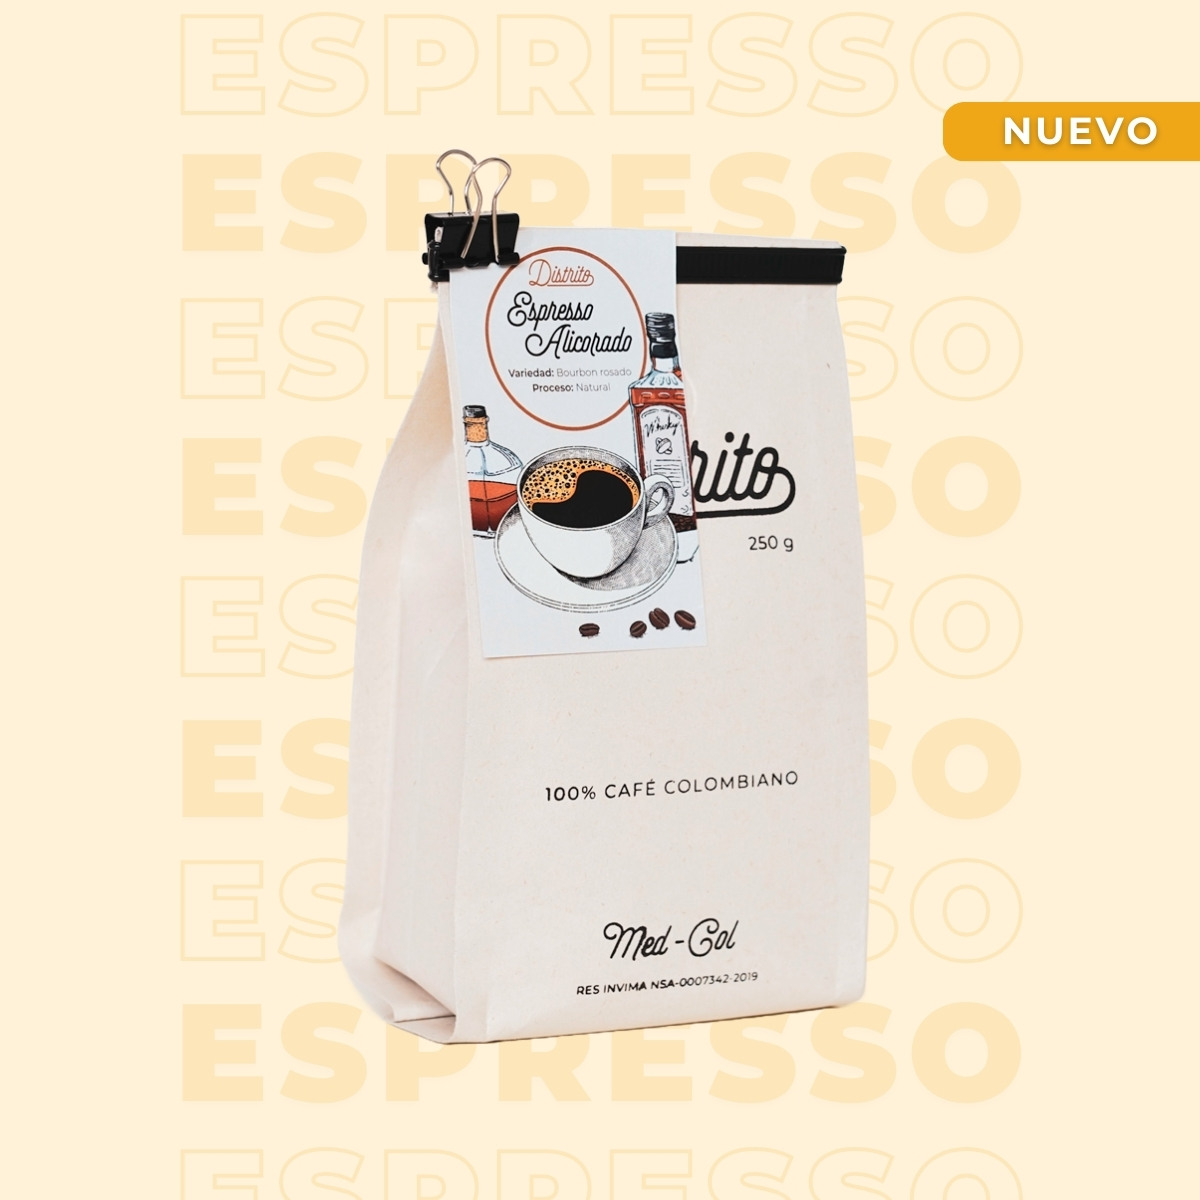 ESPRESSO ALICORADO - Café Especial - Espresso Alicorado